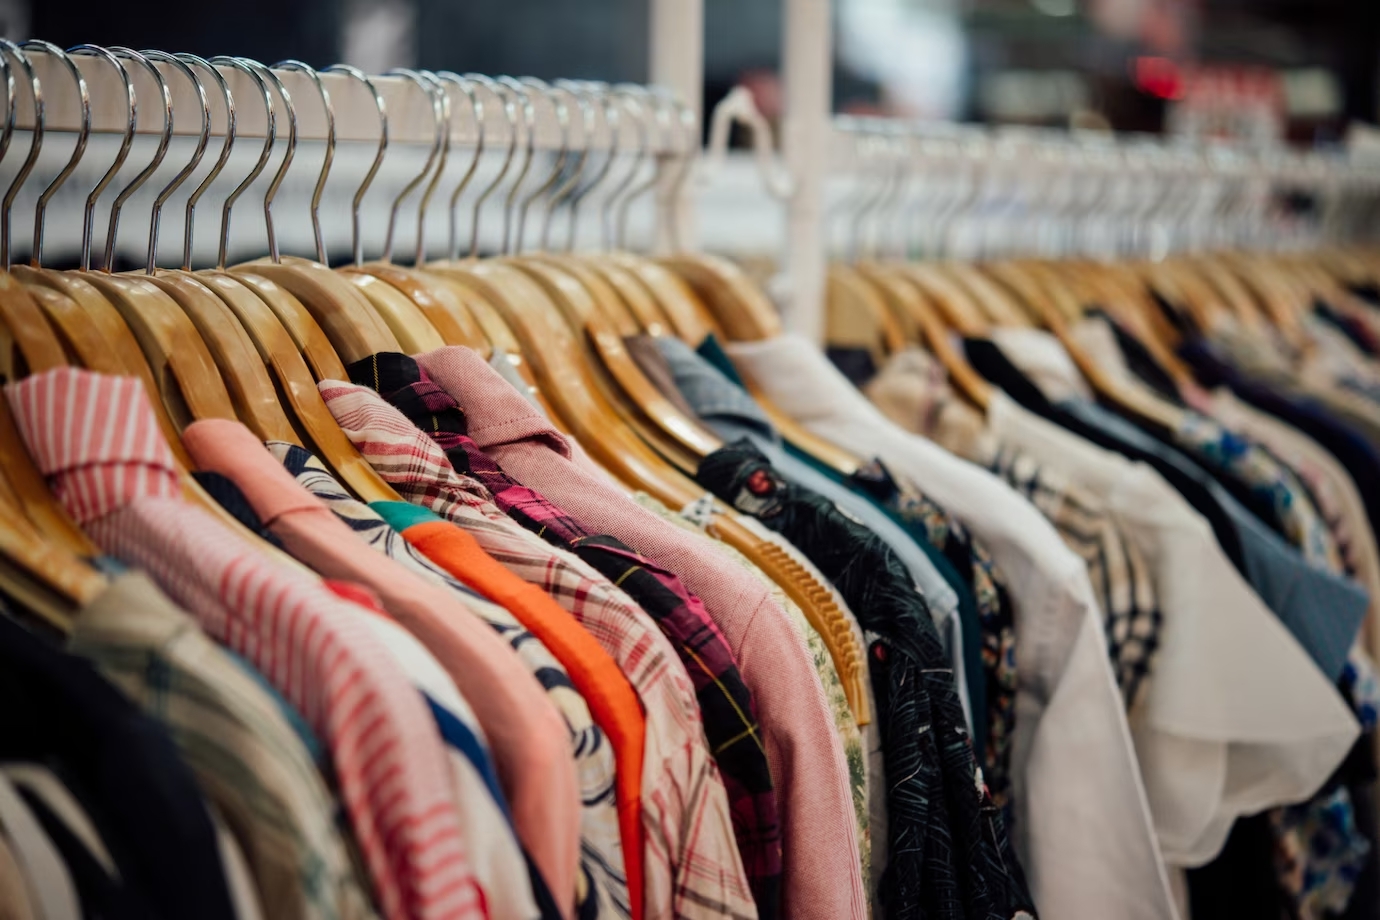 Padronização da roupa pode causar revolução no setor